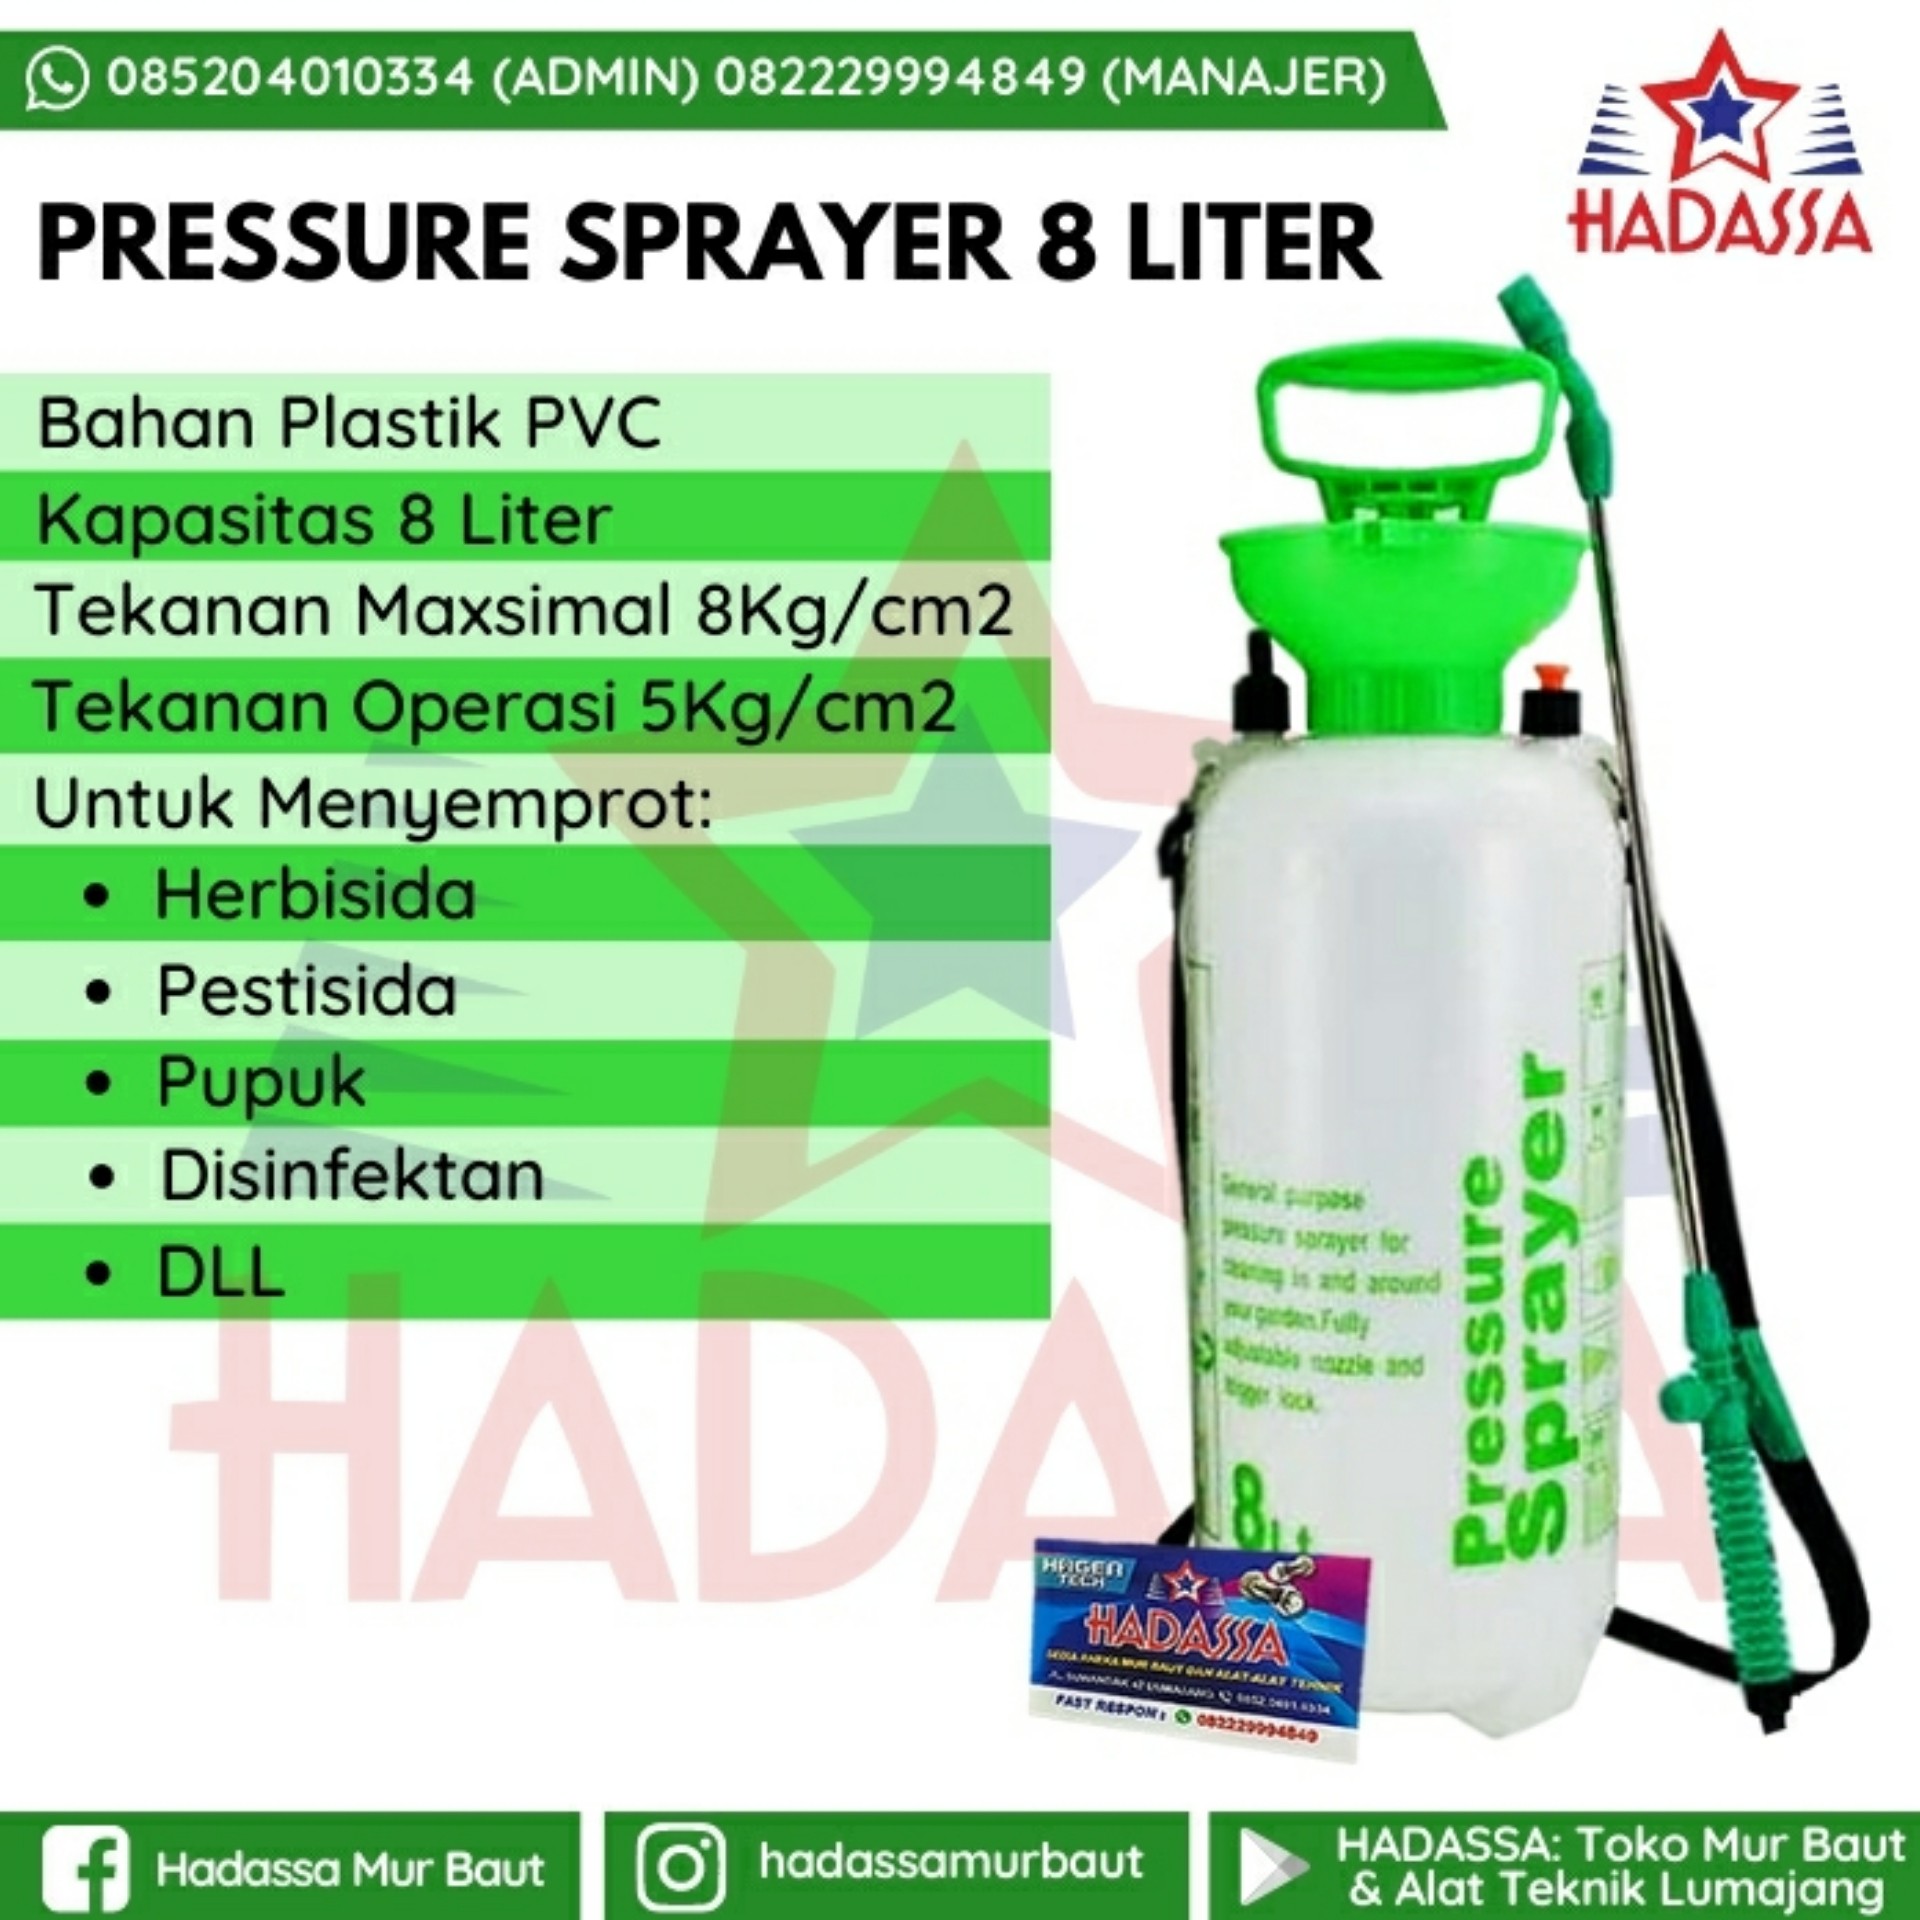 Pressure Sprayer 8 Liter